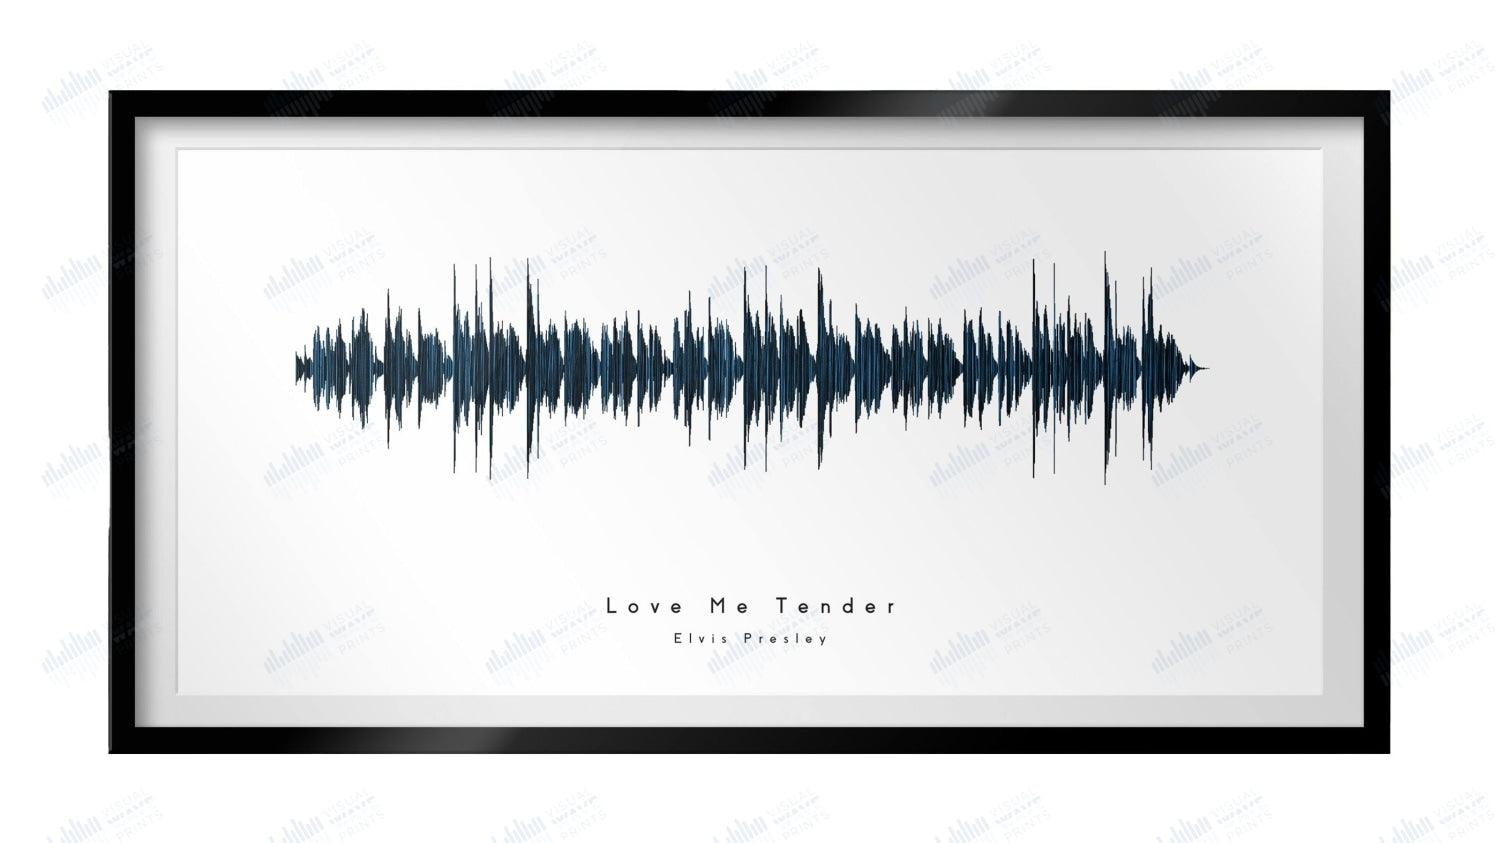 Love Me Tender by Elvis Presley - Visual Wave Prints